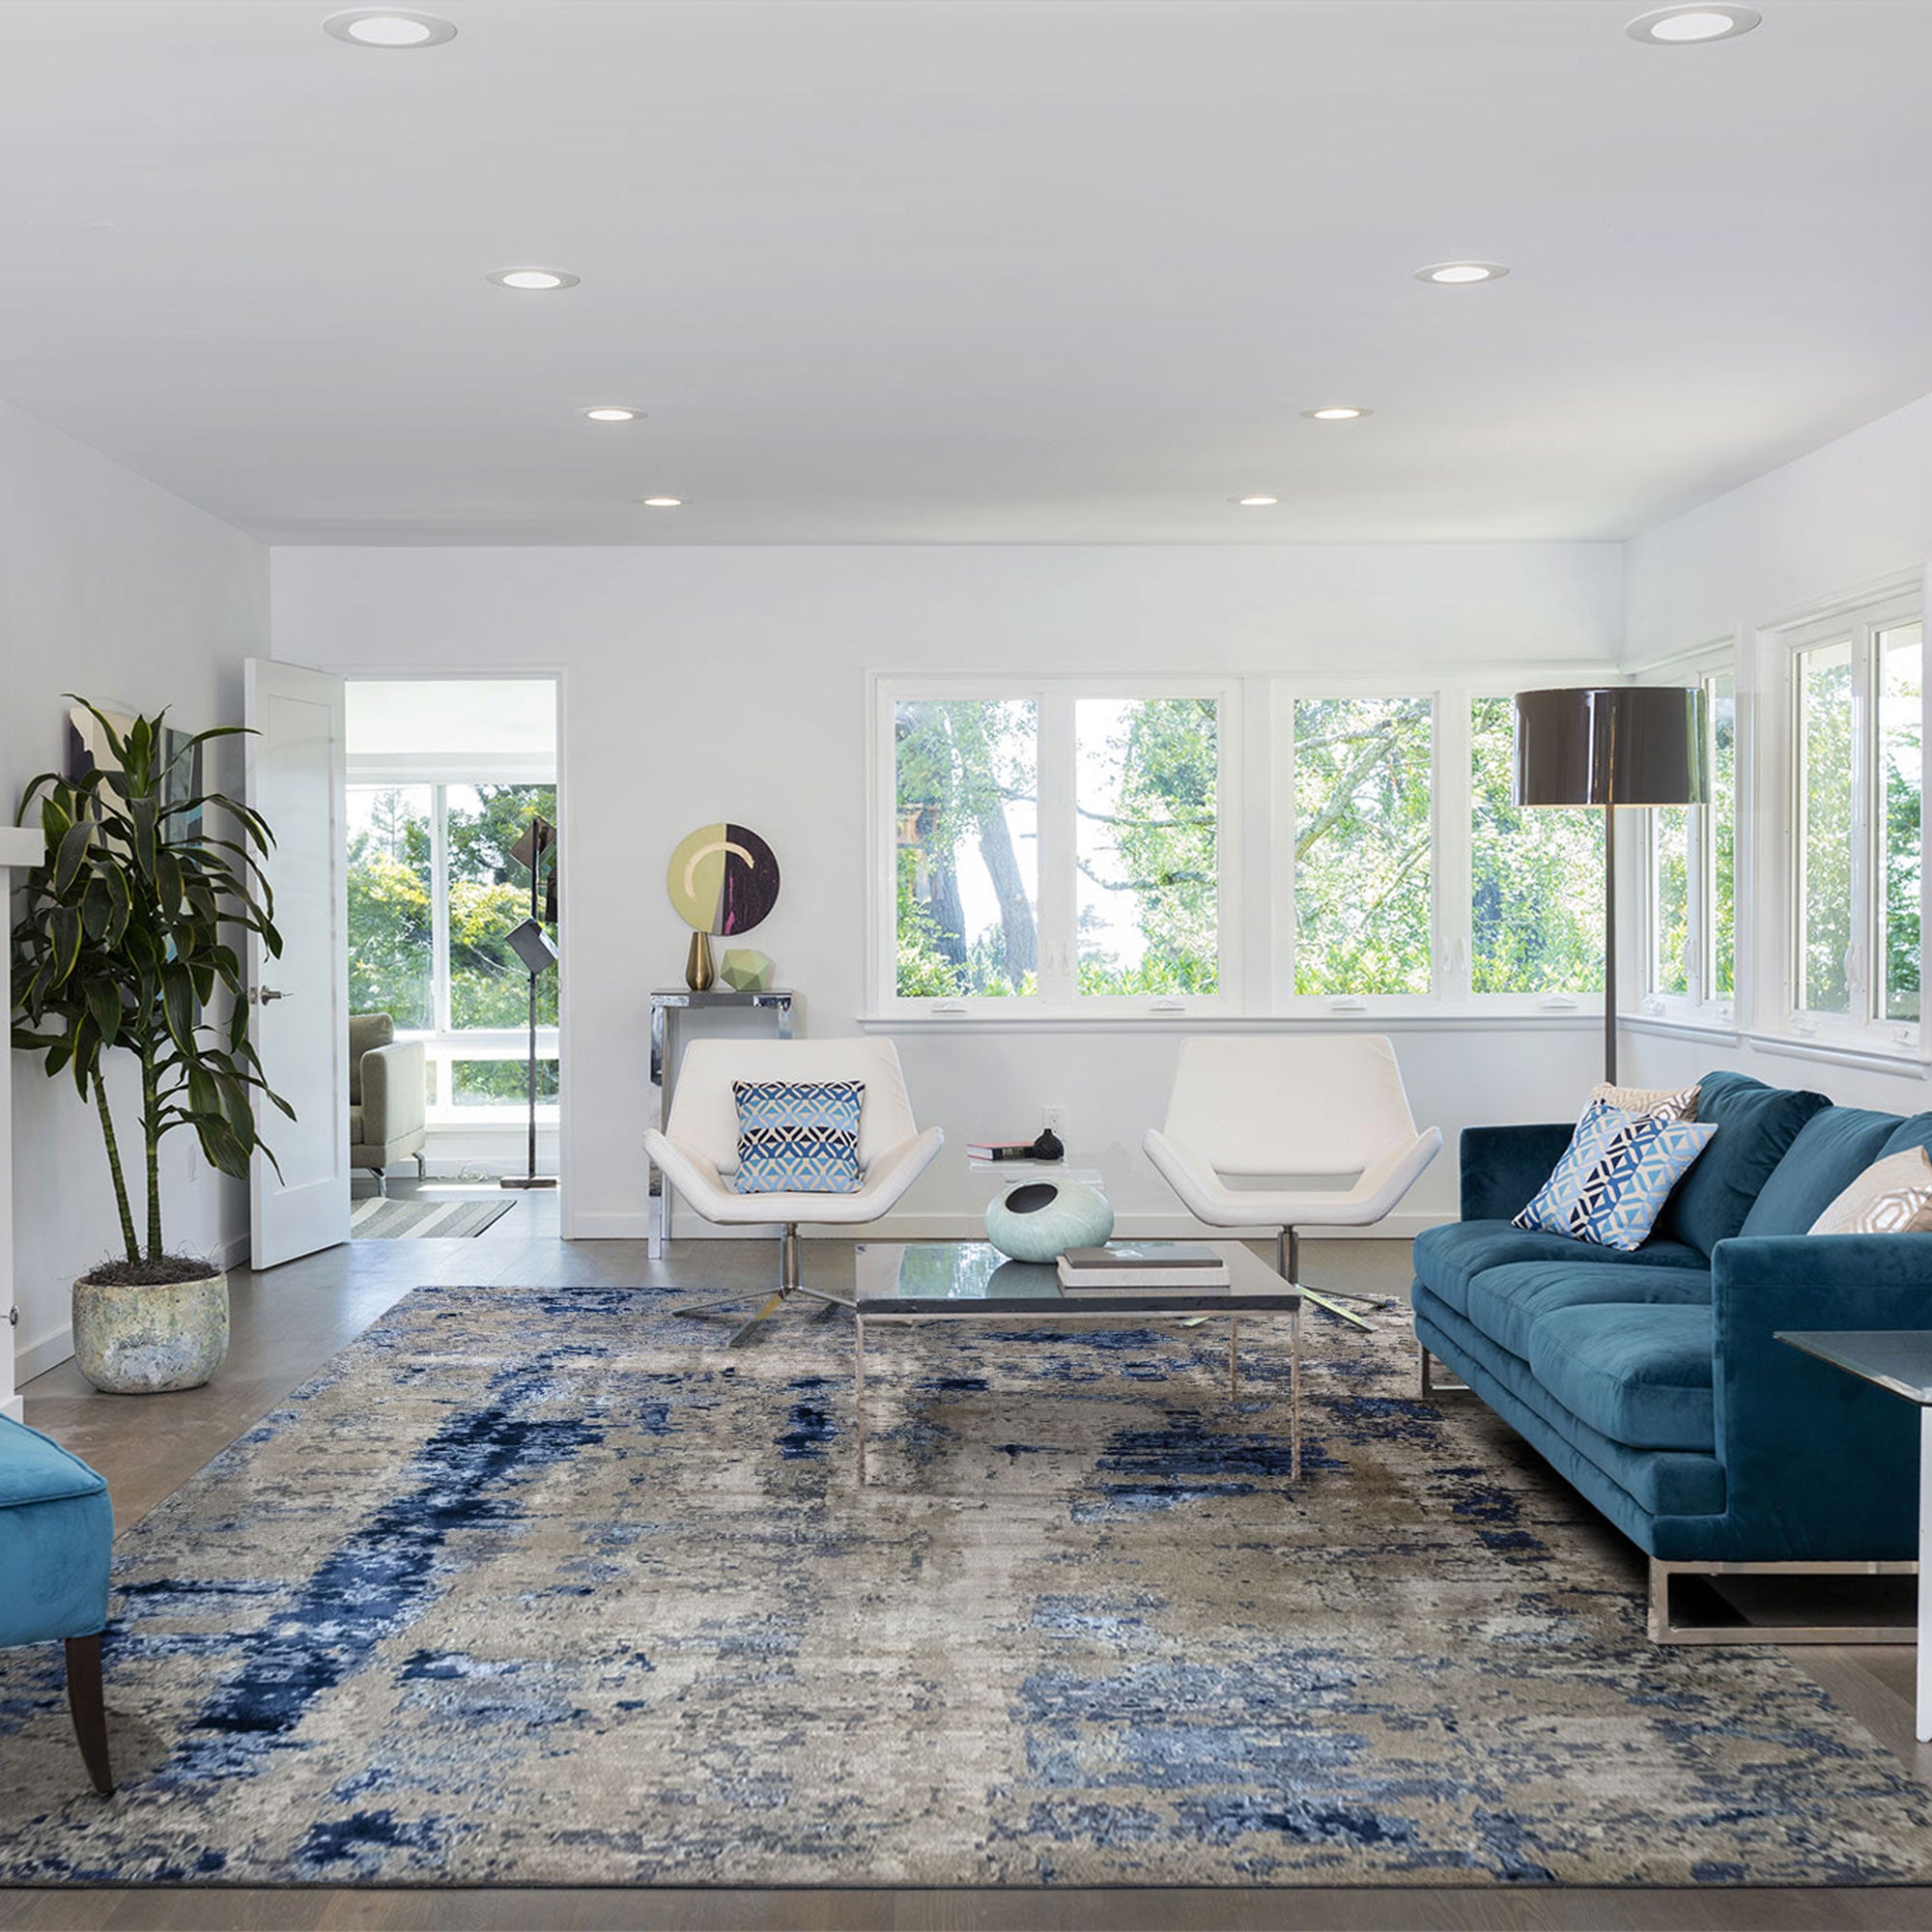 Hamid - ALPES 230x160cm - Tapis décoratif contemporain et moderne en laine  beige et bleu, pour salon, salle à manger, chambre